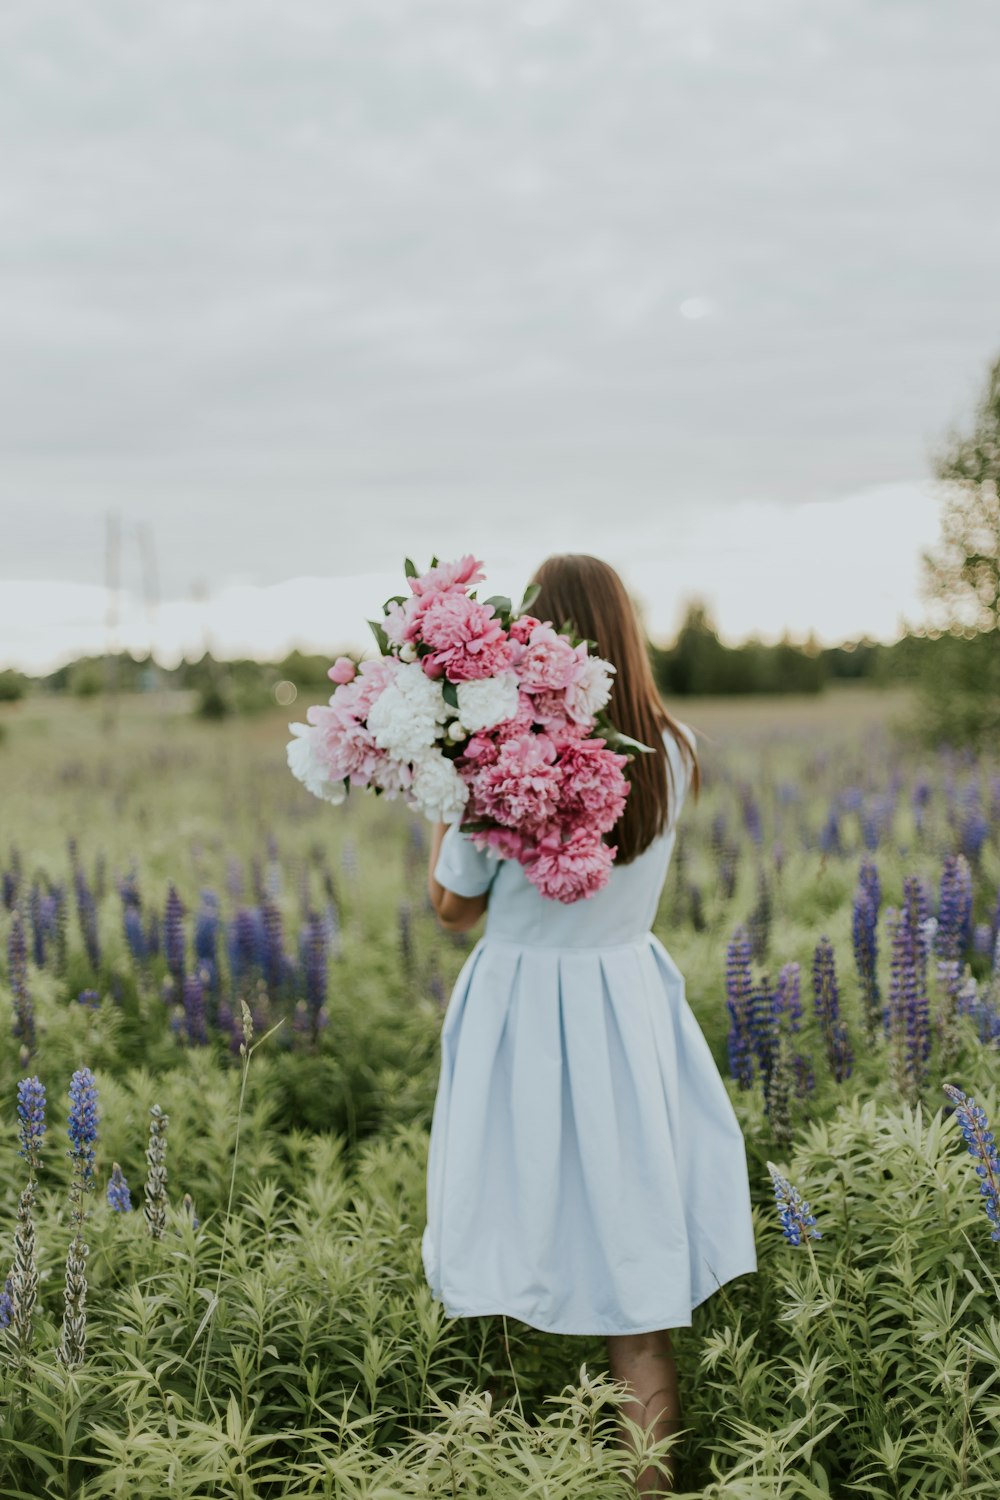 mulher que carrega flores cor-de-rosa e brancas